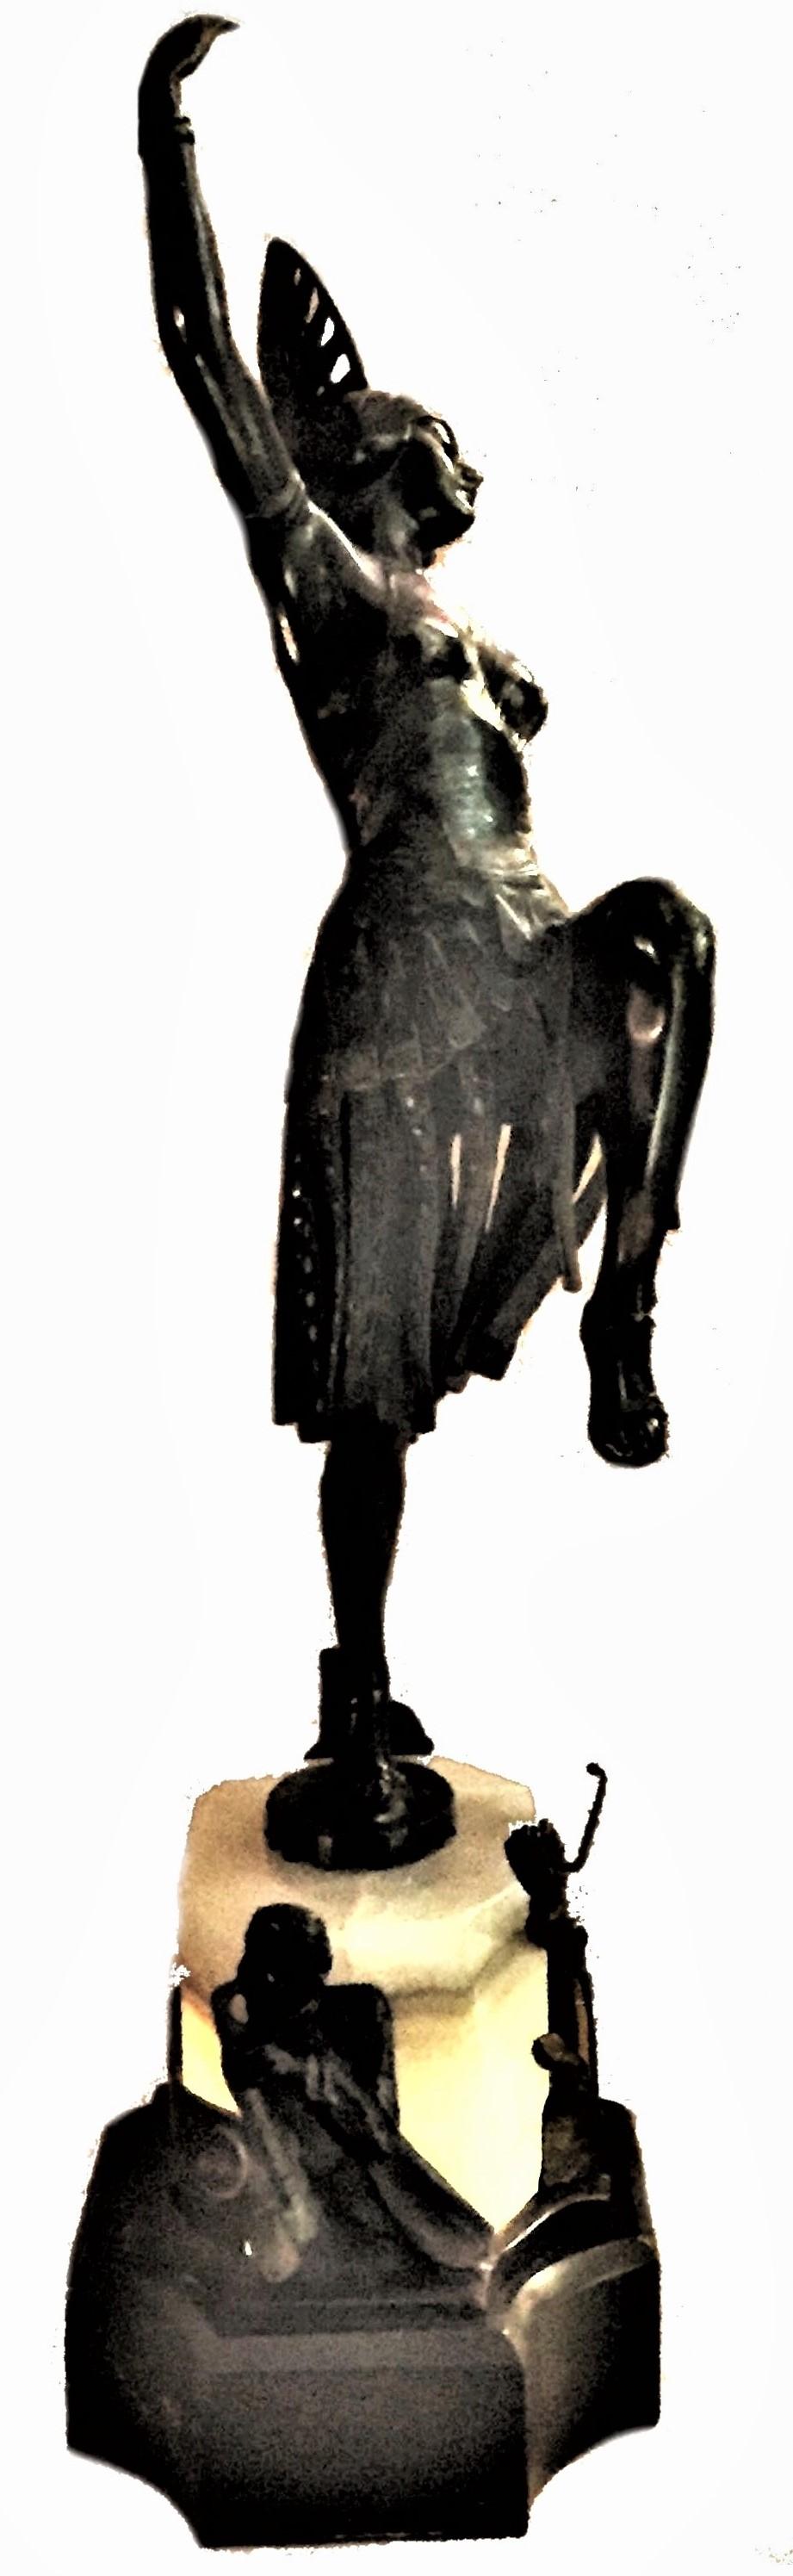 Une belle et très inhabituelle lampe de chevet Art Déco autrichienne avec une danseuse exotique semi-nue dans une coiffe de luxe. La base de la lampe est faite d'une combinaison de marbre noir et d'onyx, la partie en onyx de la base étant illuminée.